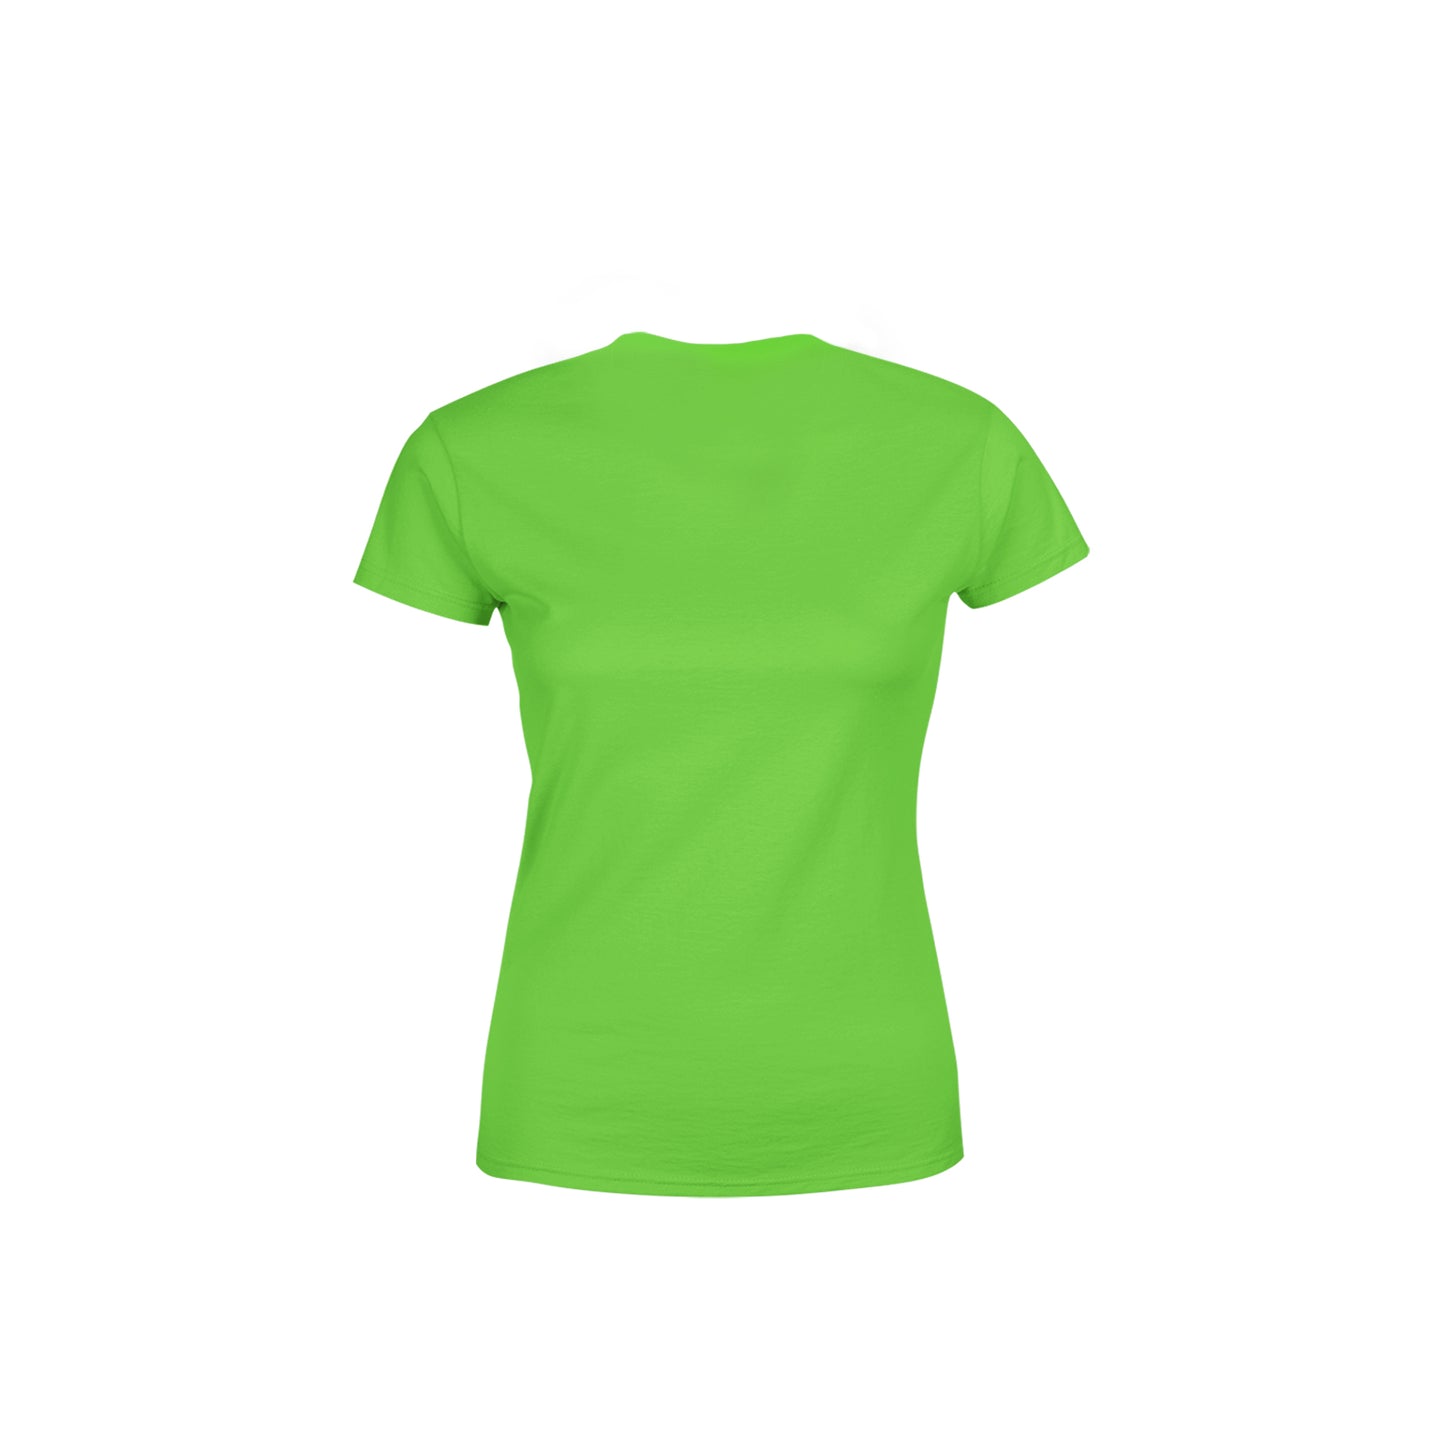 81 Number Women's T-Shirt (Liril Green)